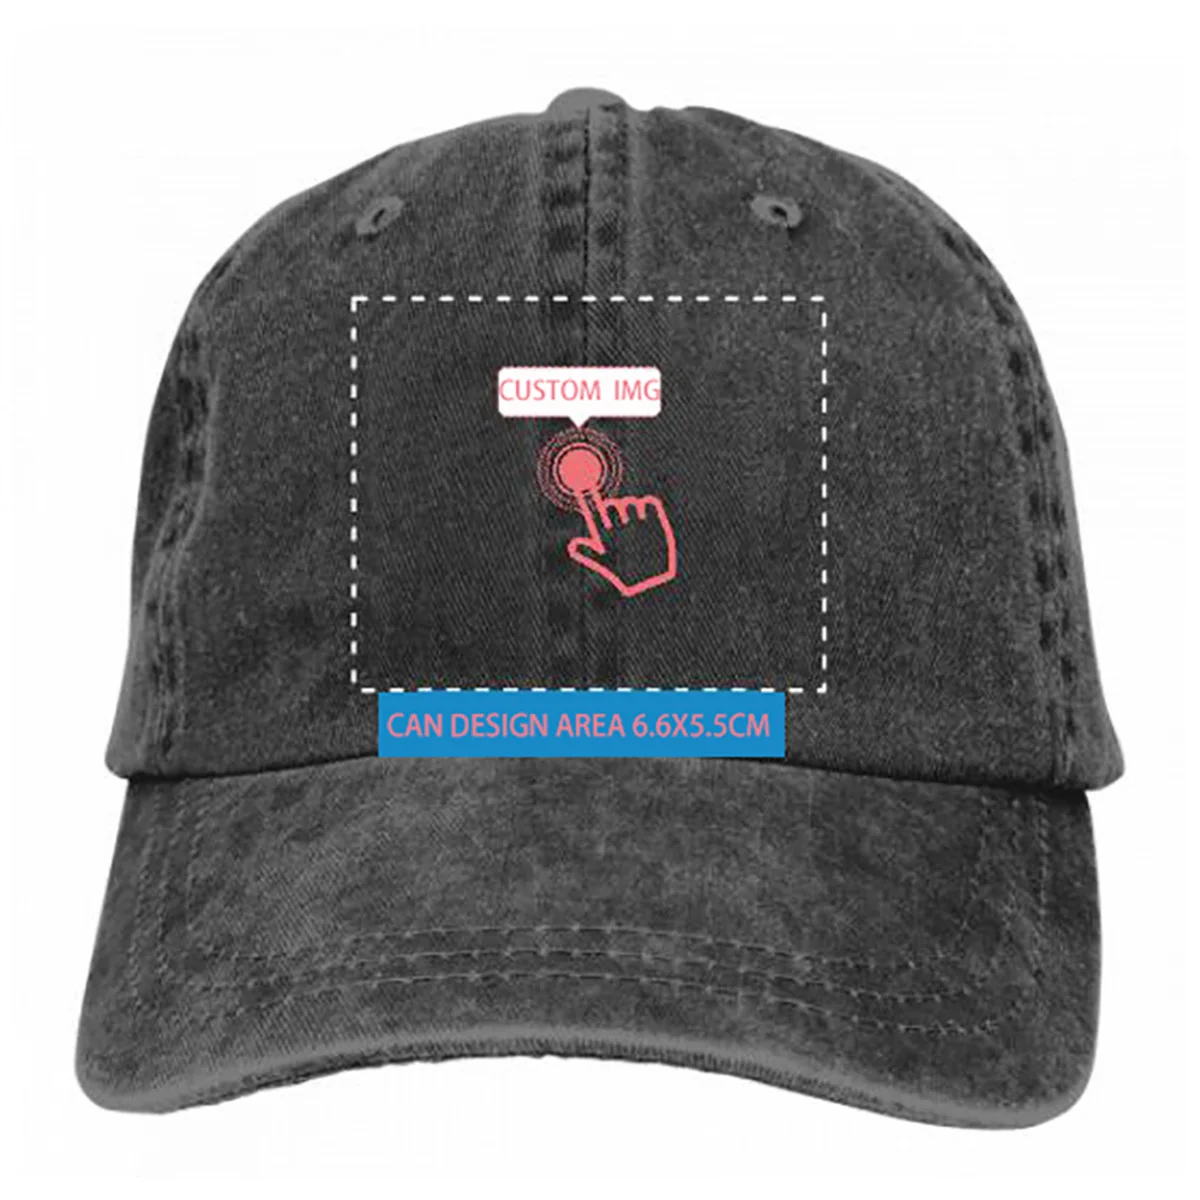 

Hip hop Baseball Cap Royals Wild Hat Adjustable Men Women Outdoor Sun Hats Trucker Caps